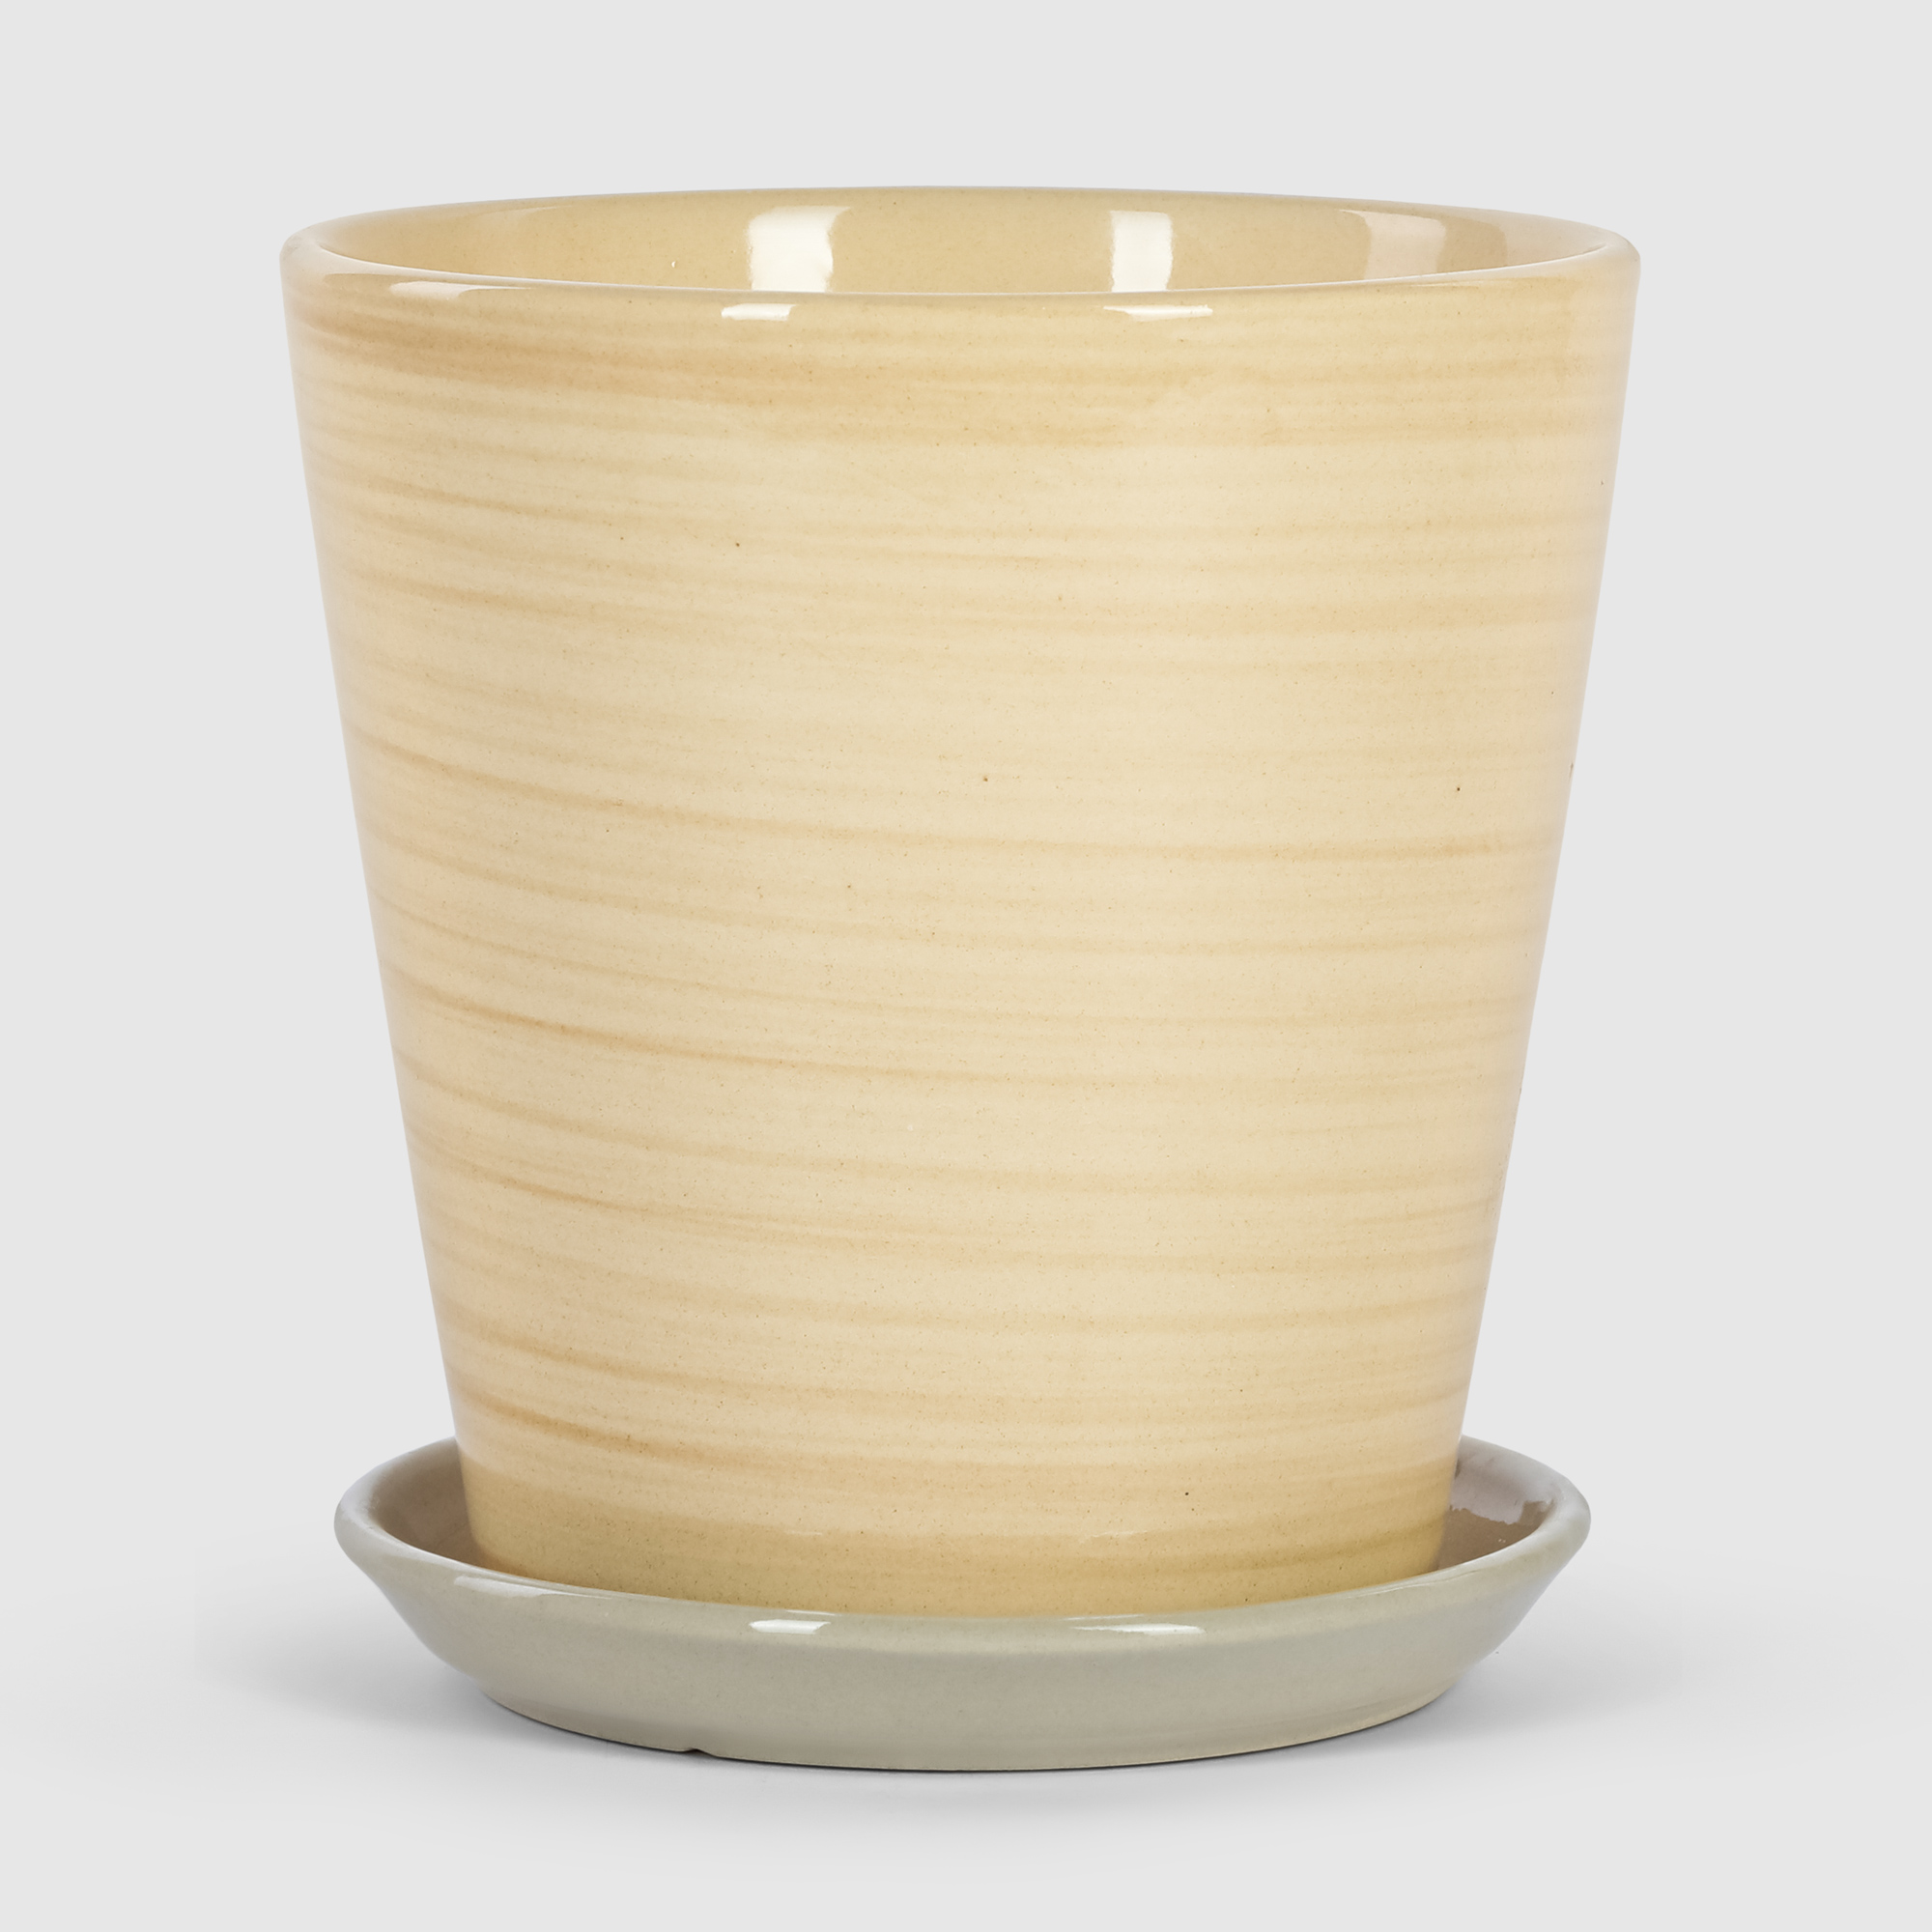 Кашпо керамическое для цветов Shine Pots 20x20см бежевое полосатое кашпо керамическое для ов shine pots 20x20см антрацит